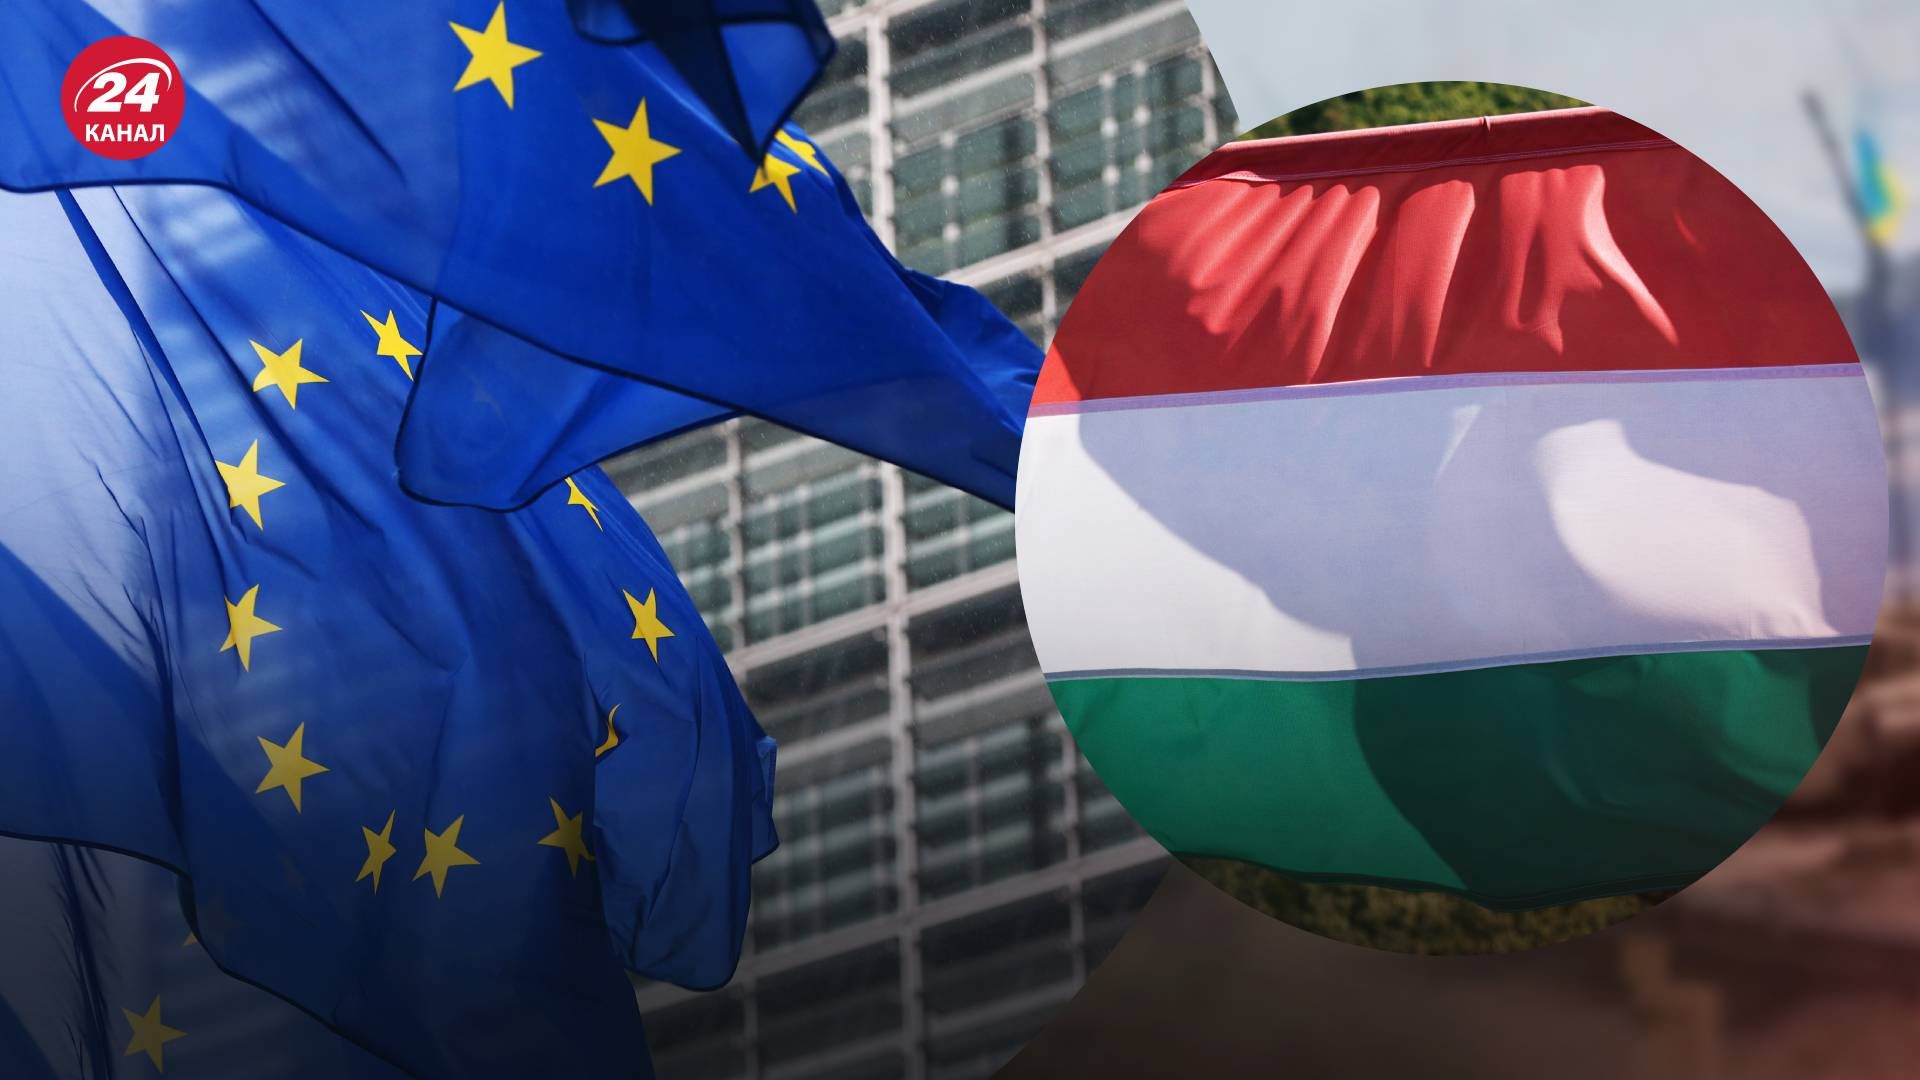 Угорщина відреагувала на заходи Єврокомісії щодо її головування через мирні вояжі Орбана - 24 Канал